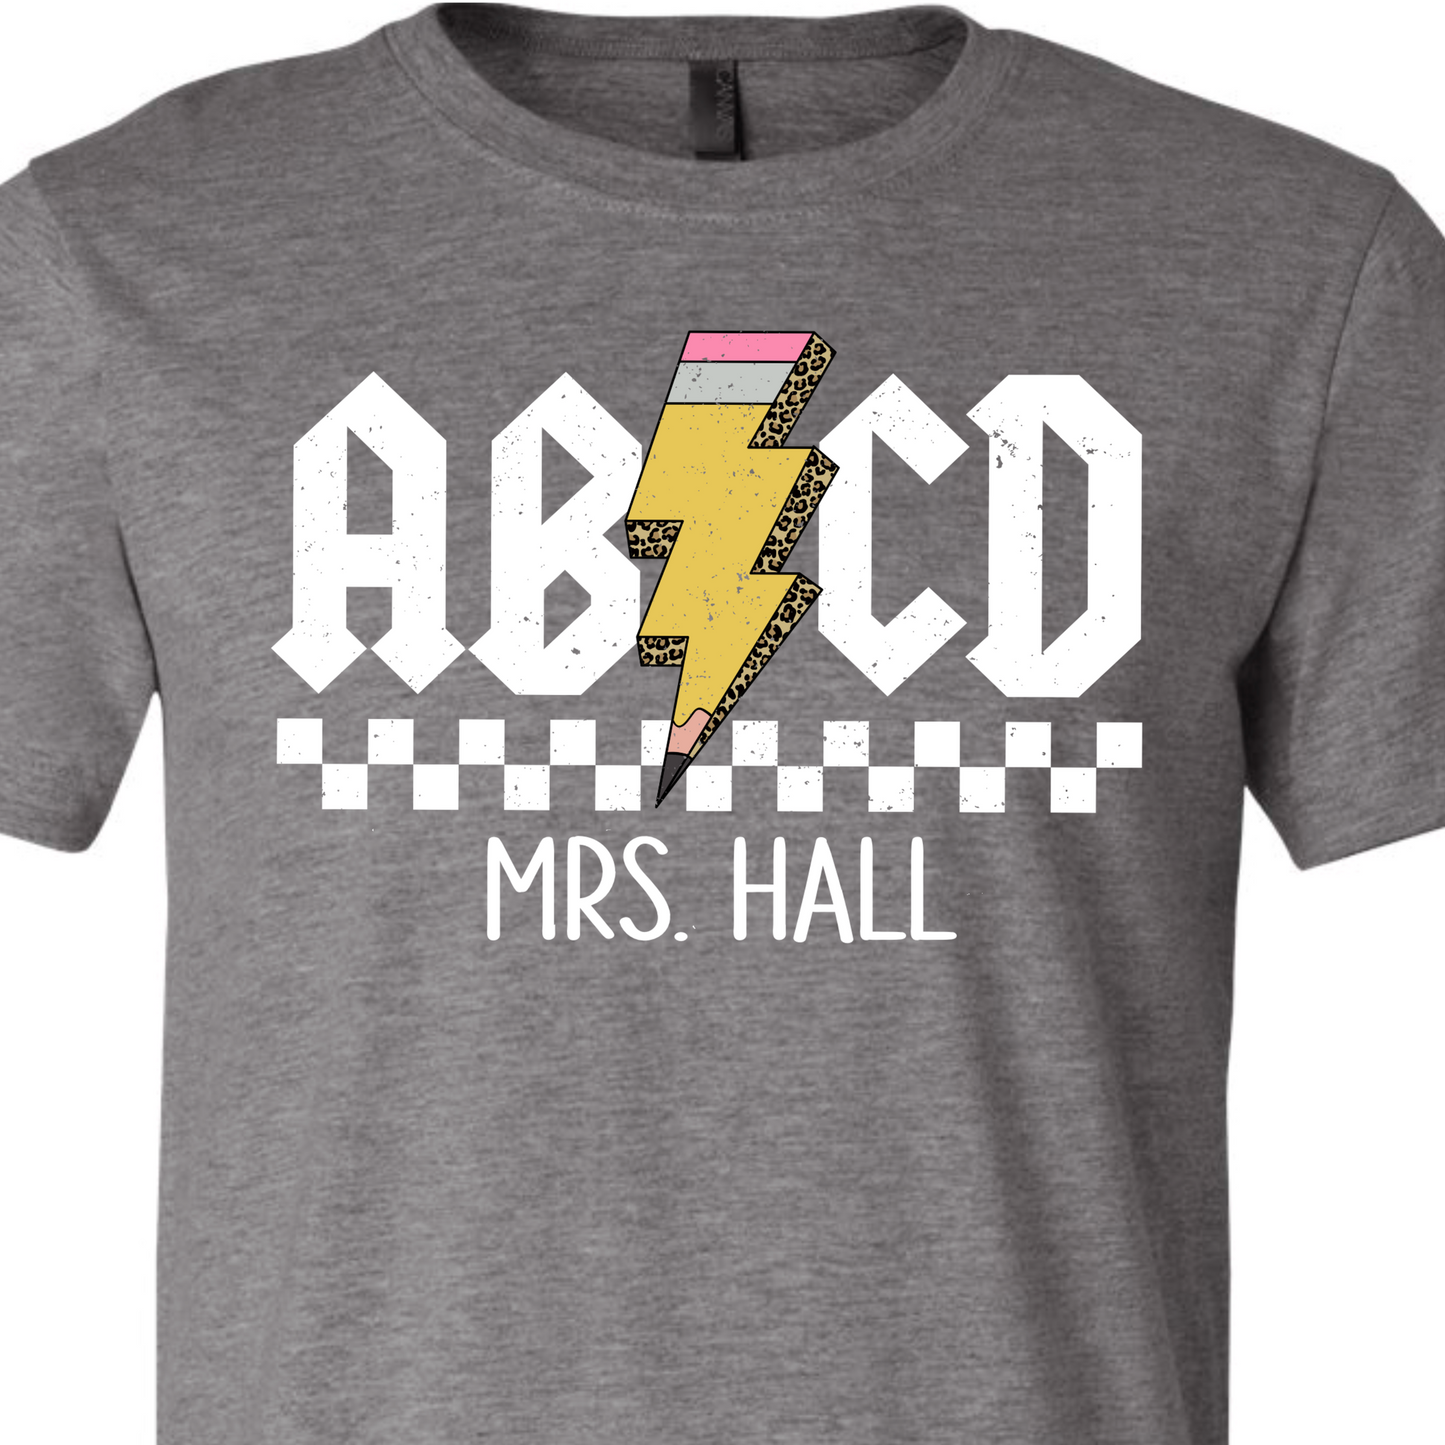 ABCD Teacher Spirit T-Shirt